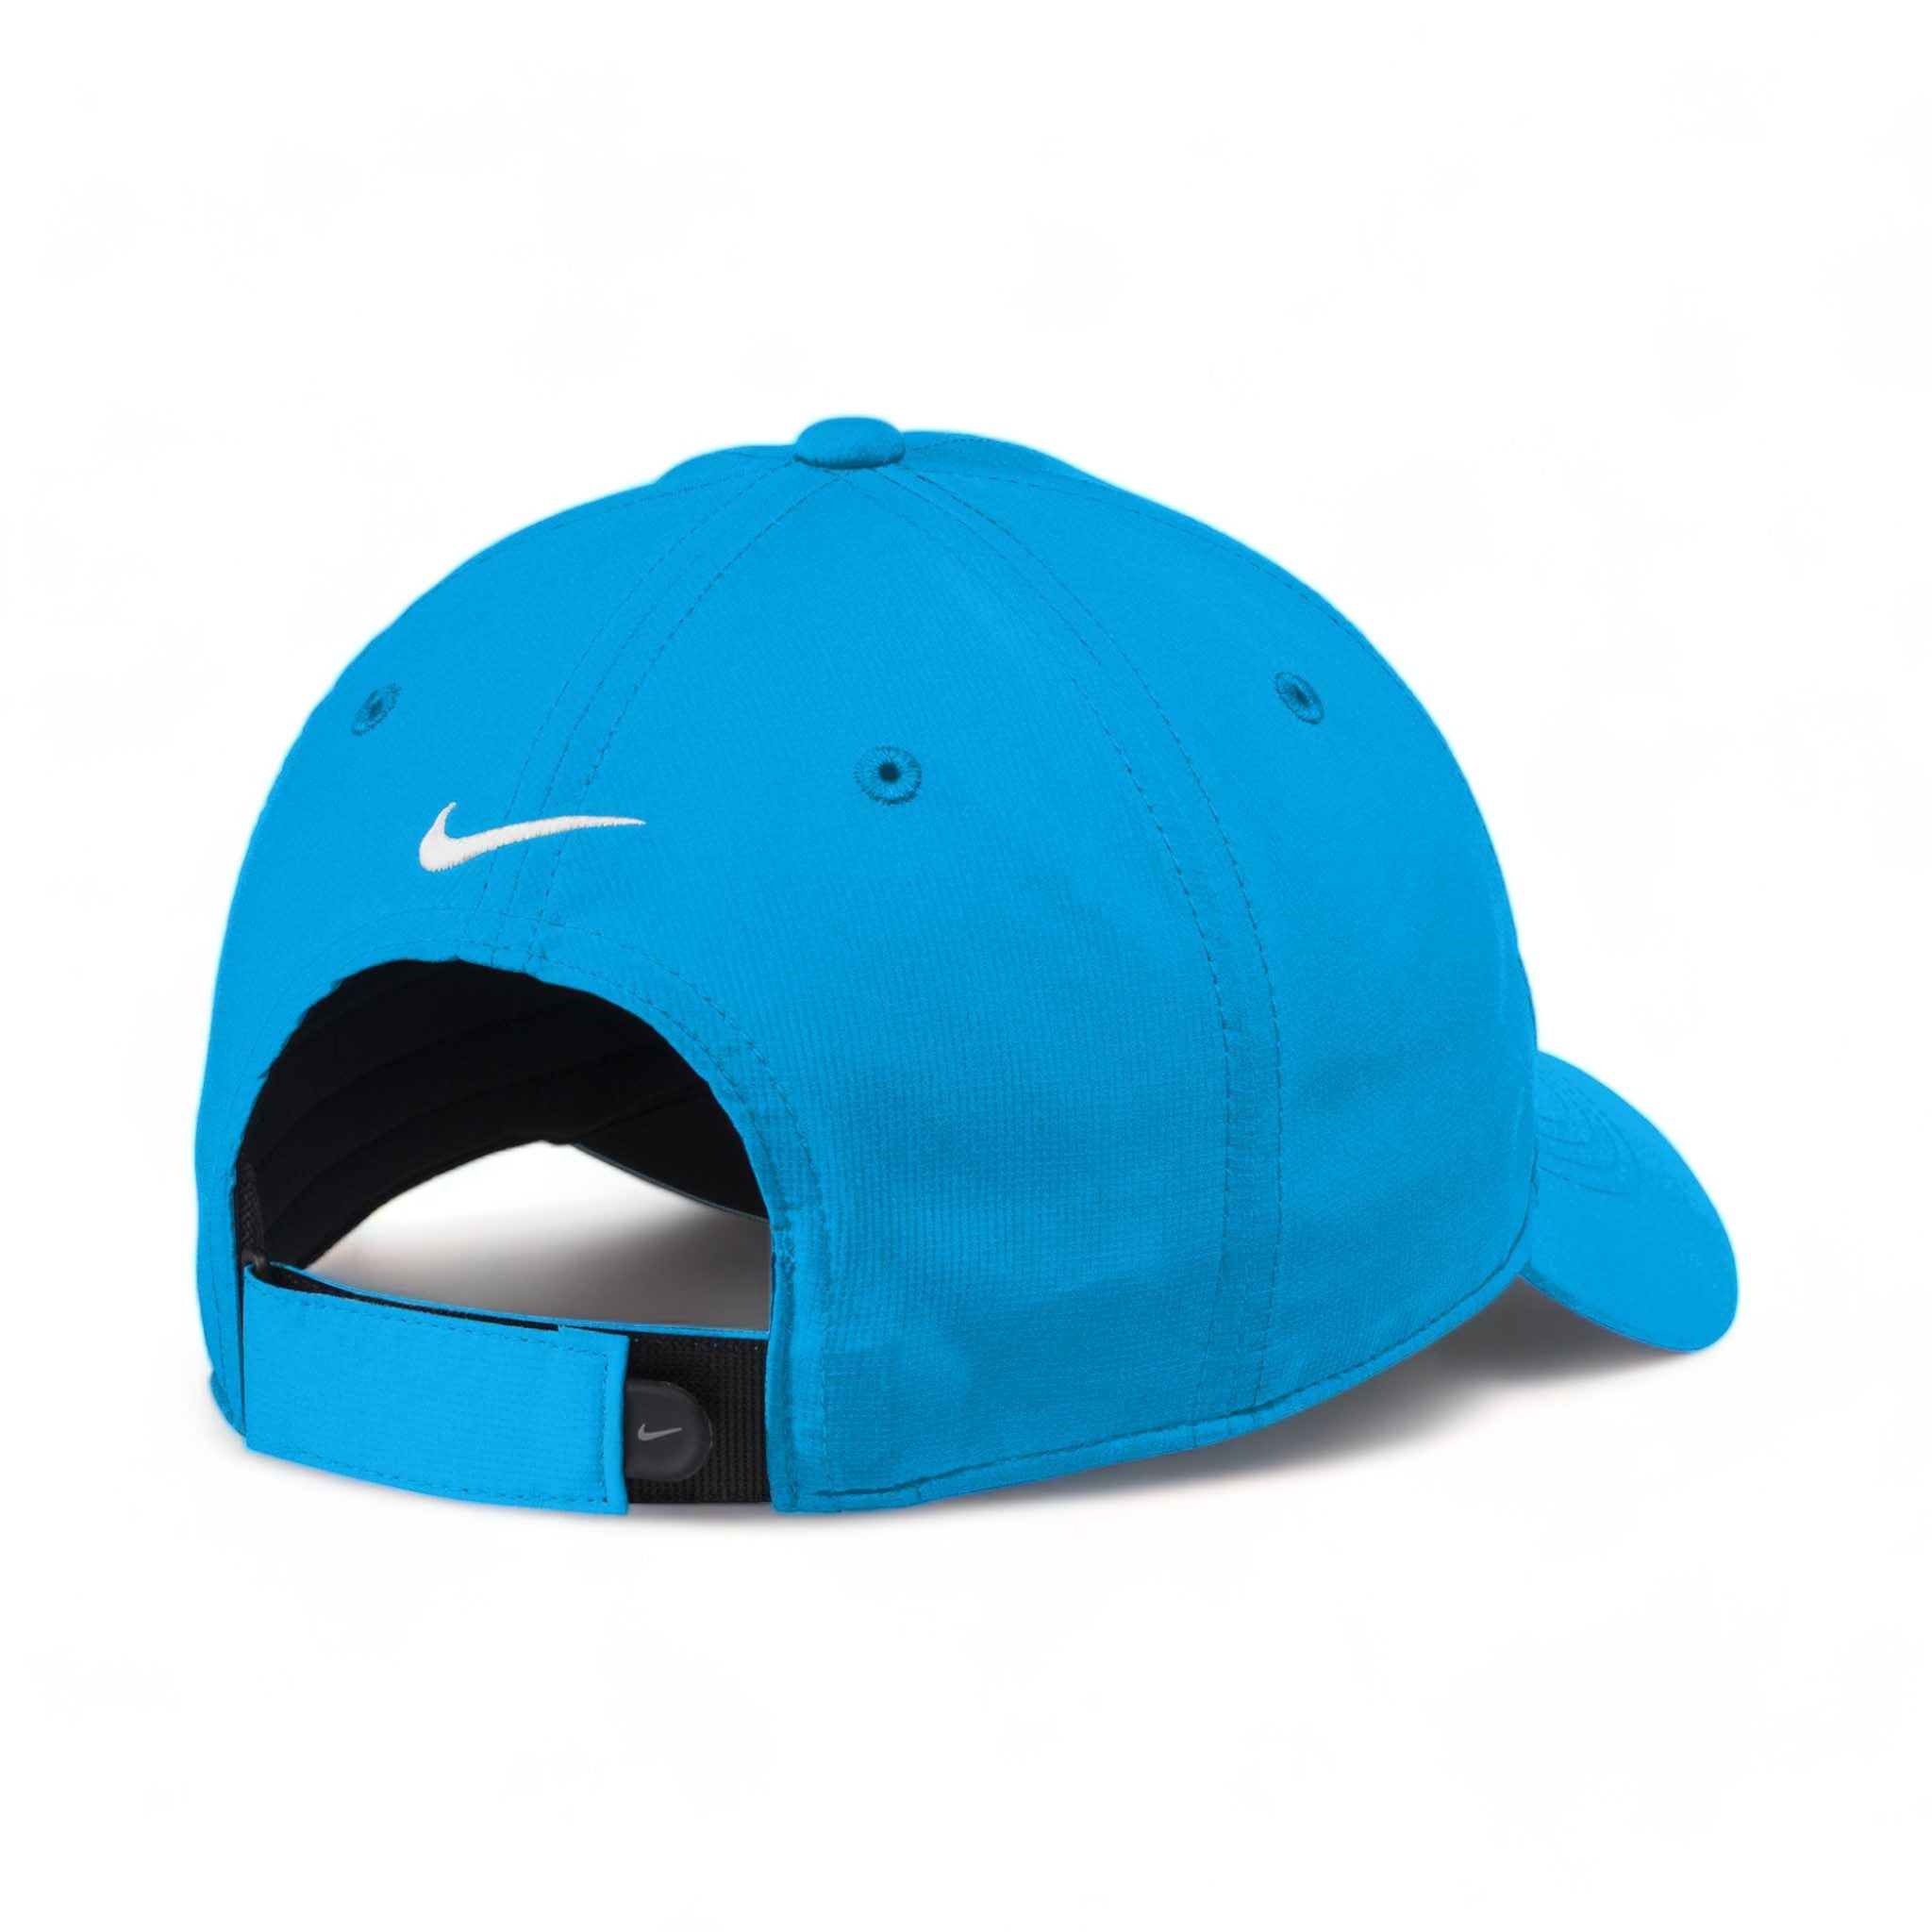 Back view of Nike NKFB6444 custom hat in photo blue